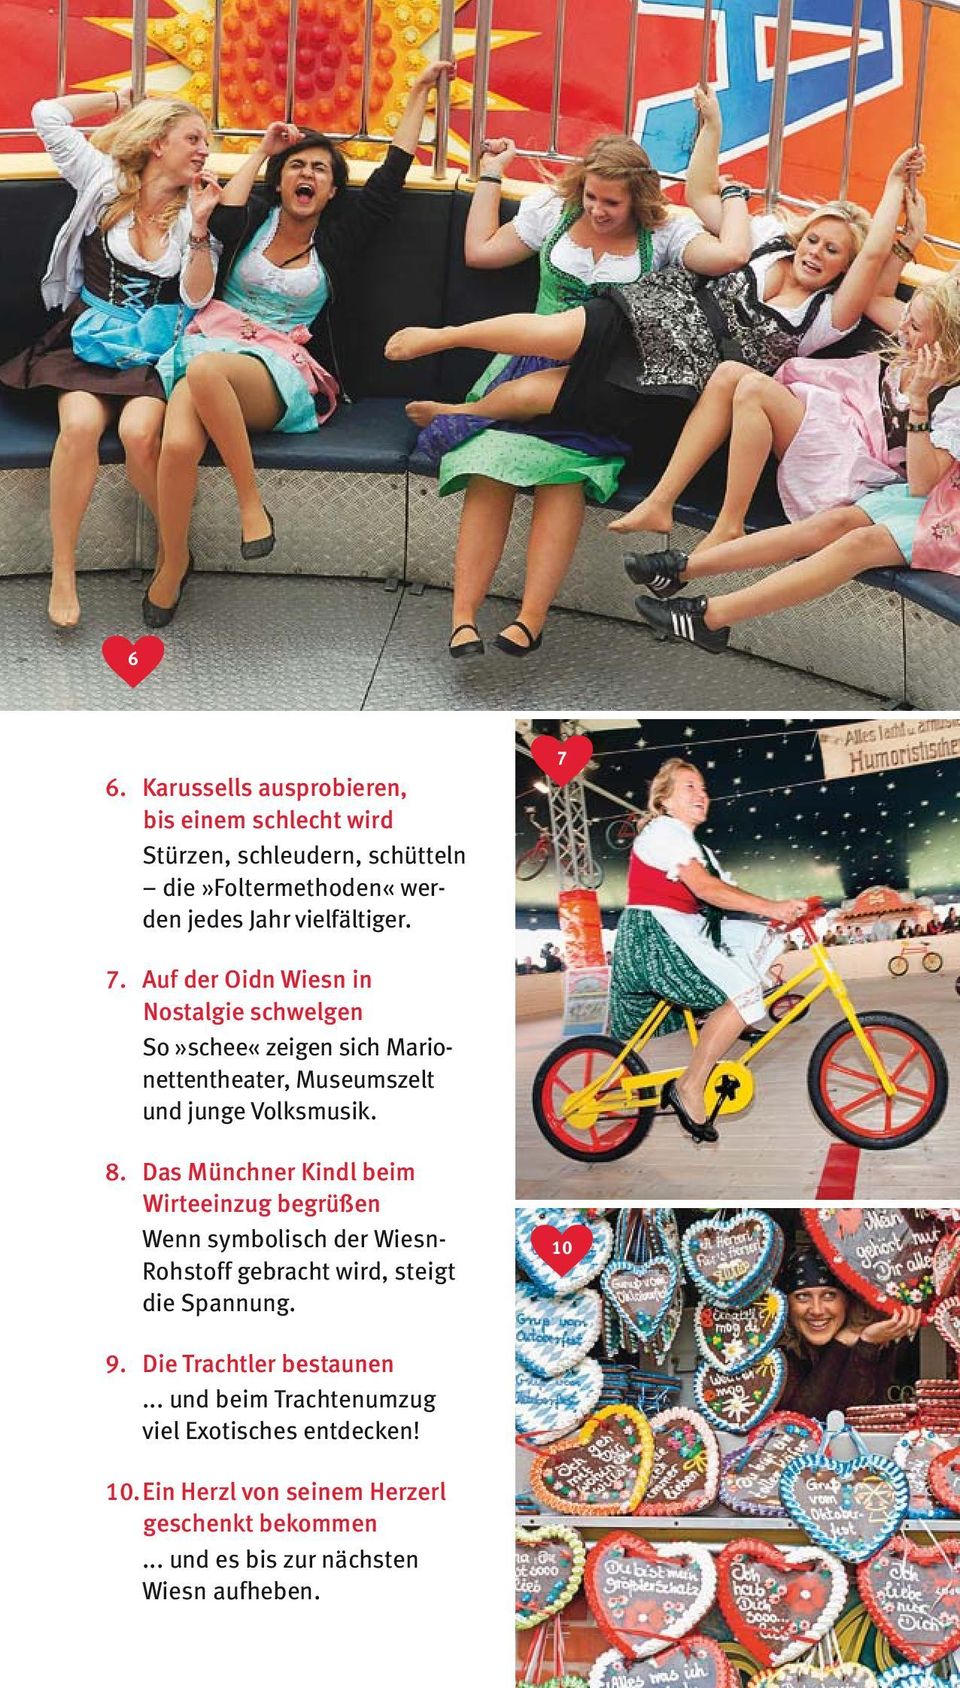 Das Münchner Kindl beim Wirteeinzug begrüßen Wenn symbolisch der Wiesn- Rohstoff gebracht wird, steigt die Spannung. 10 9.